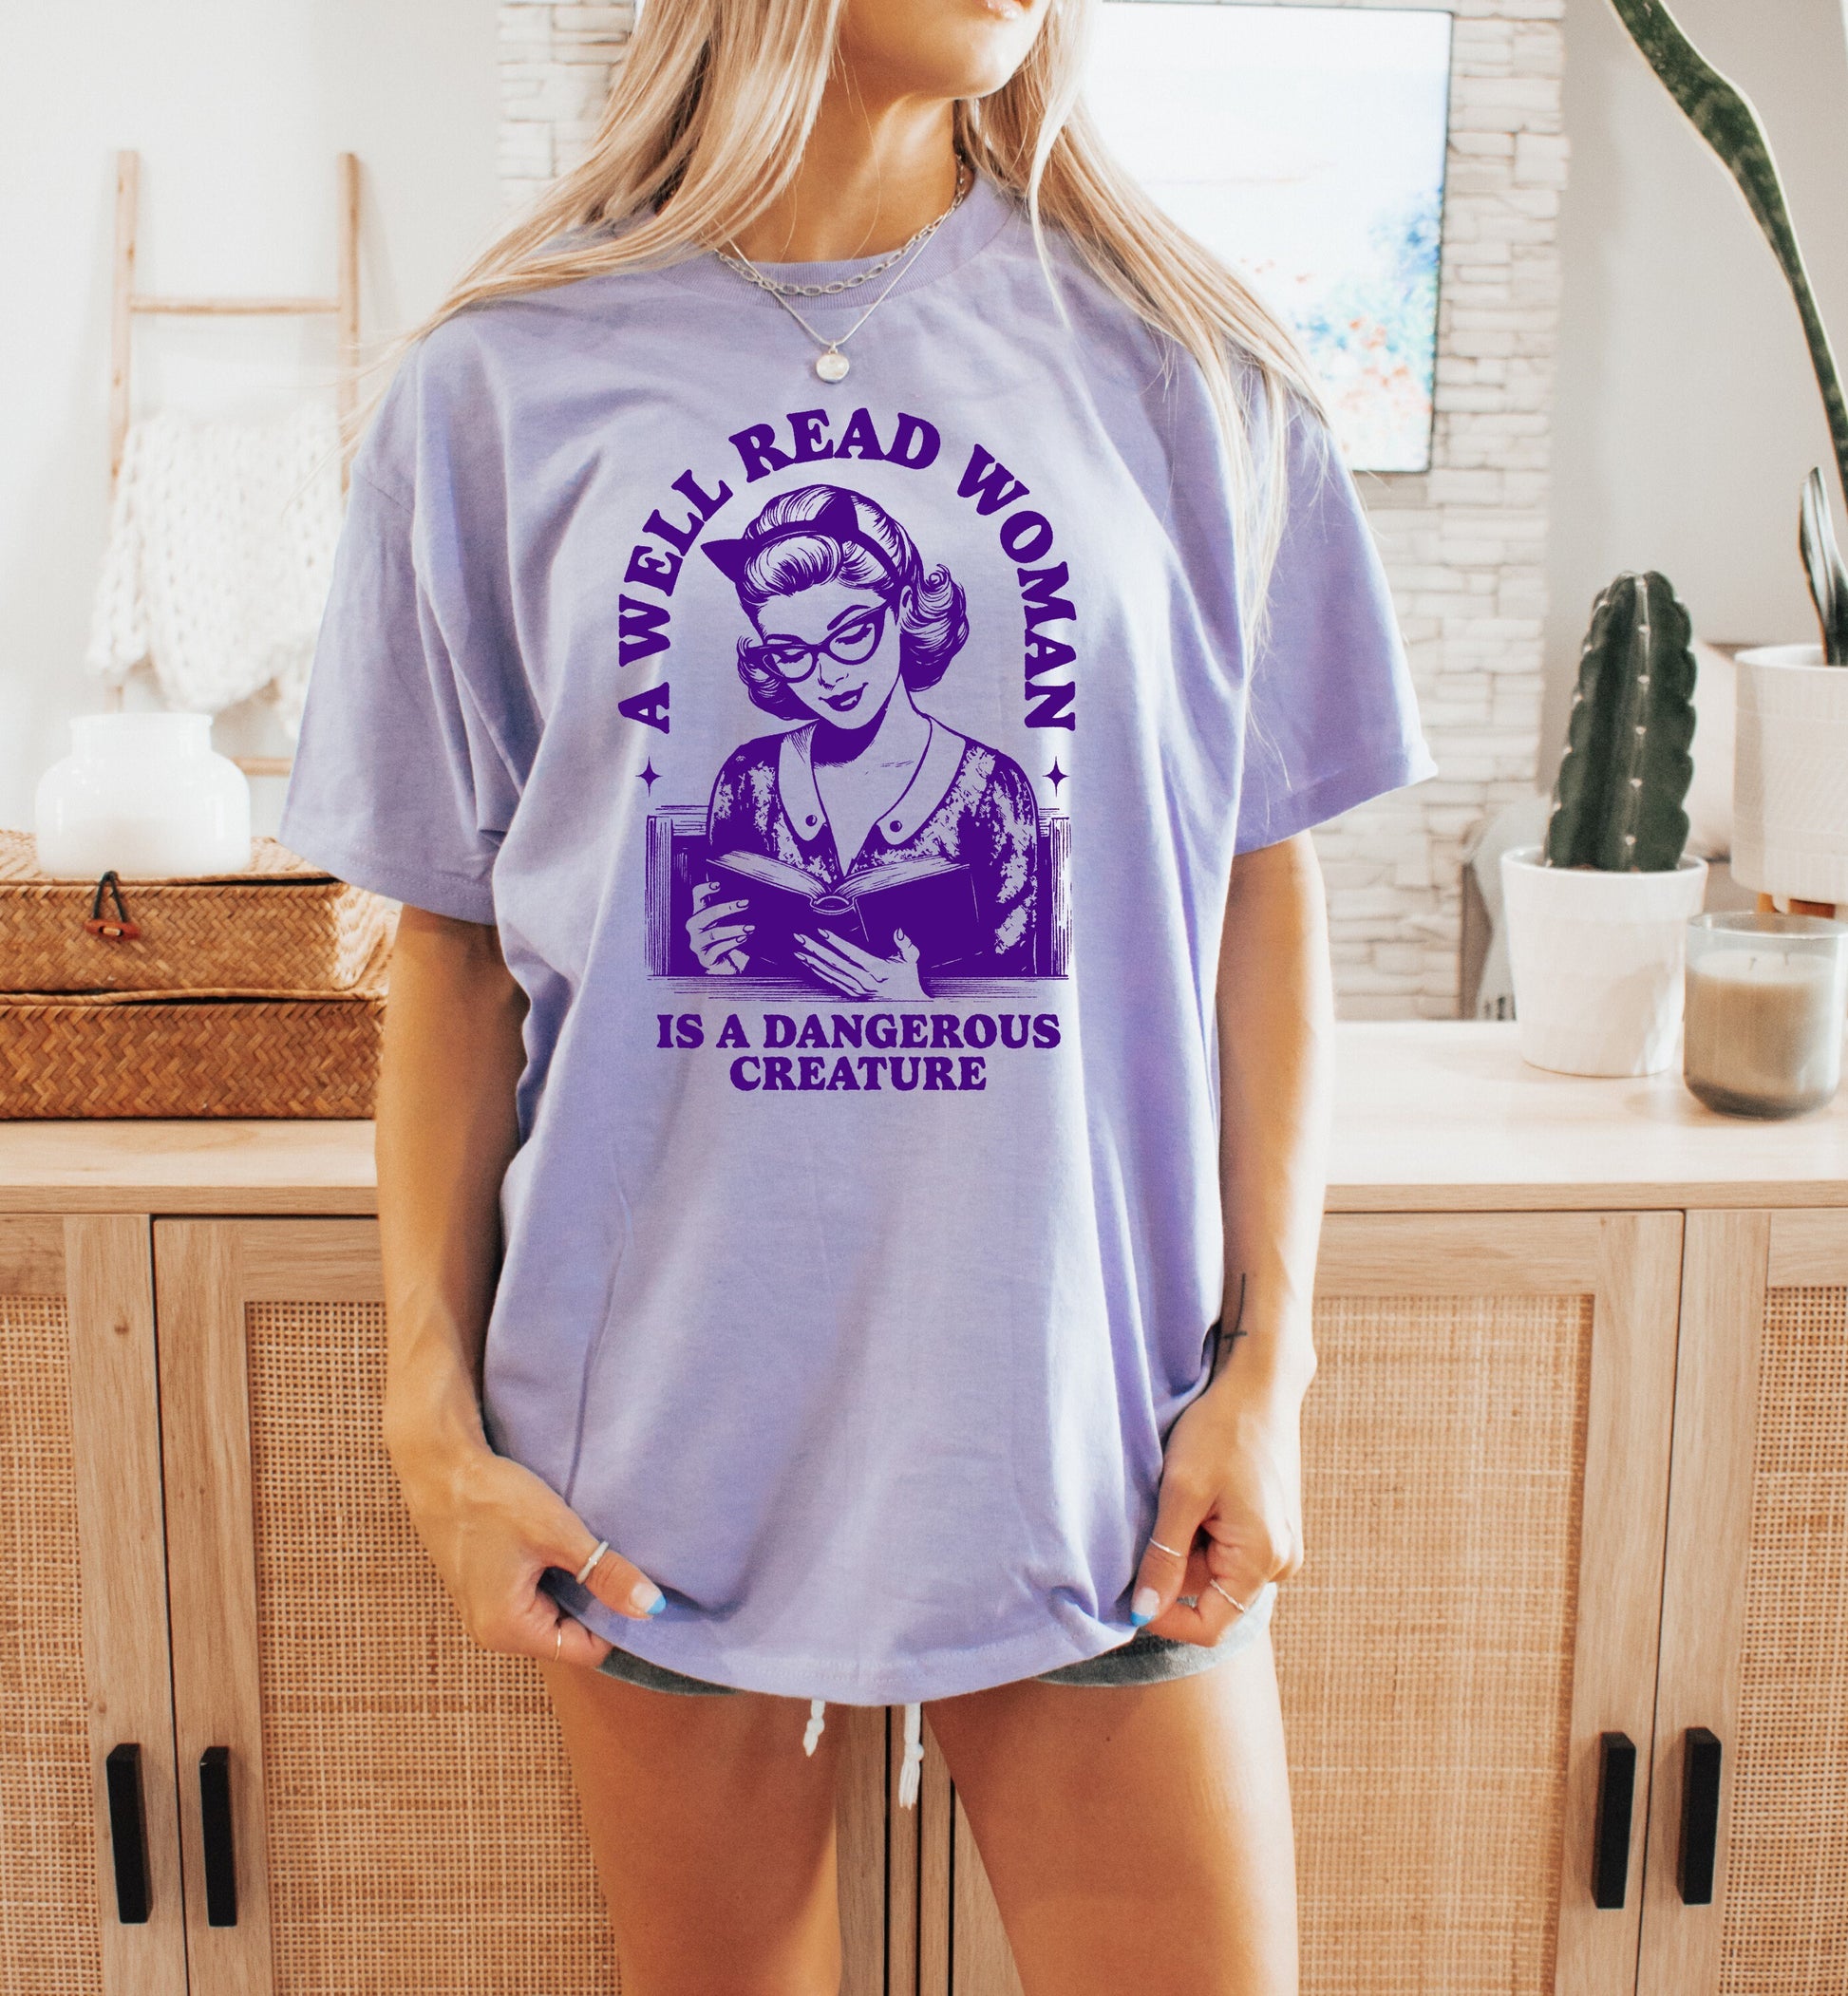 Book Shirt A Well Read Woman is a Dangerous Creature TShirt Book Lover Shirt Book TShirt women Reading Shirts Book Club Shirt Book Nerd